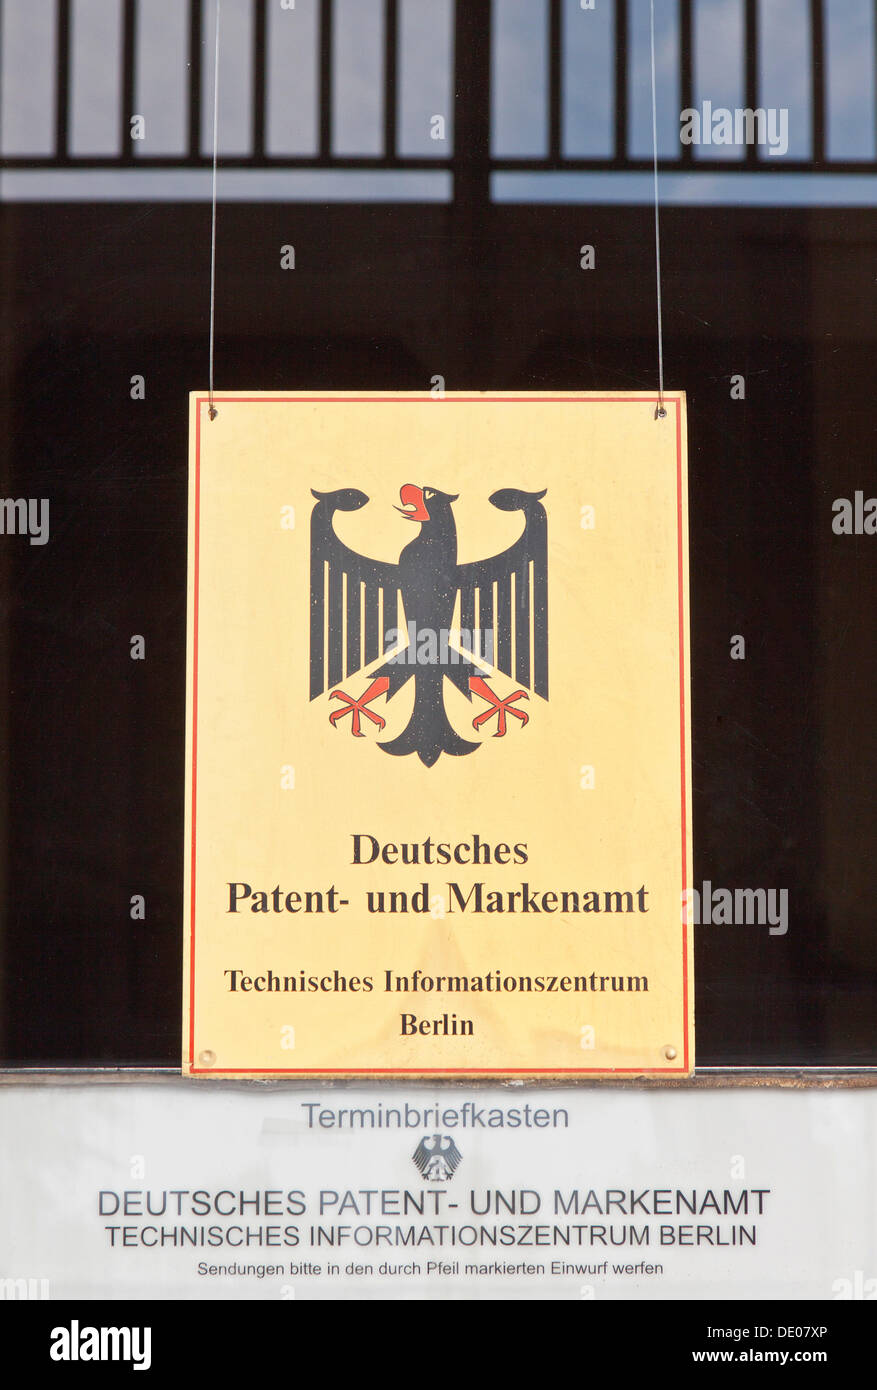 Zeichen, schmutzige Fenster, Schriftzug "Deutsches Patent-Und Markenamt", Deutsch "Deutschen Patent-und Markenamt", Berlin Stockfoto